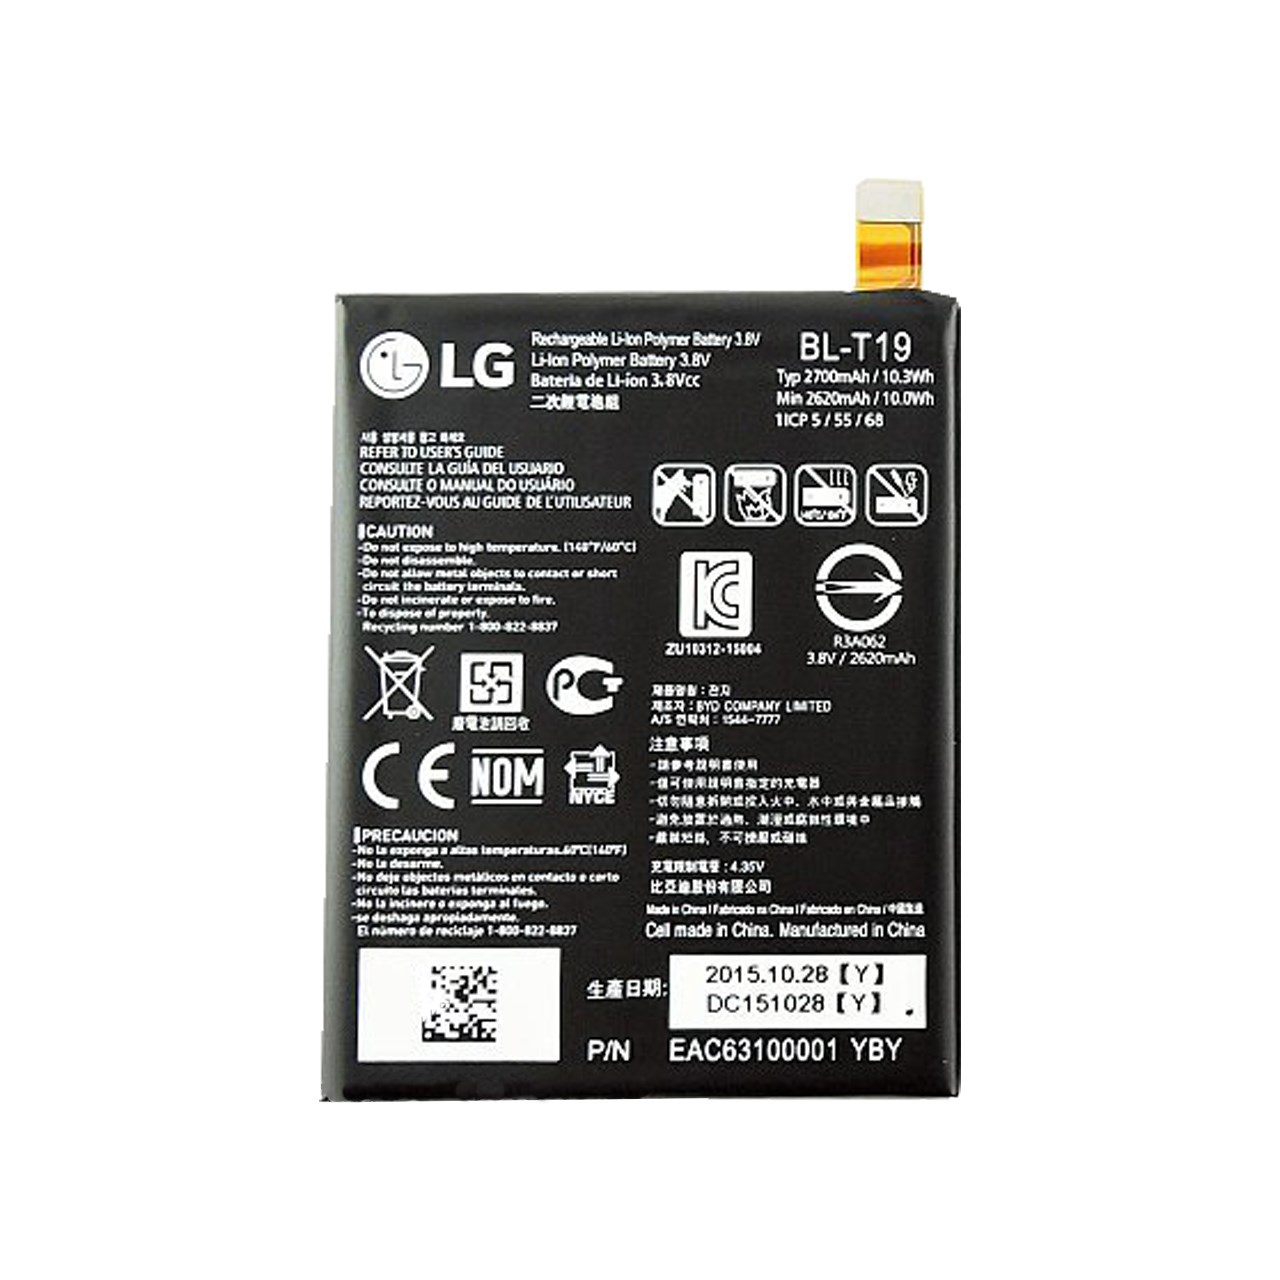 باتری گوشی مدل BL-T19 مناسب برای گوشی ال جی Google Nexus X5